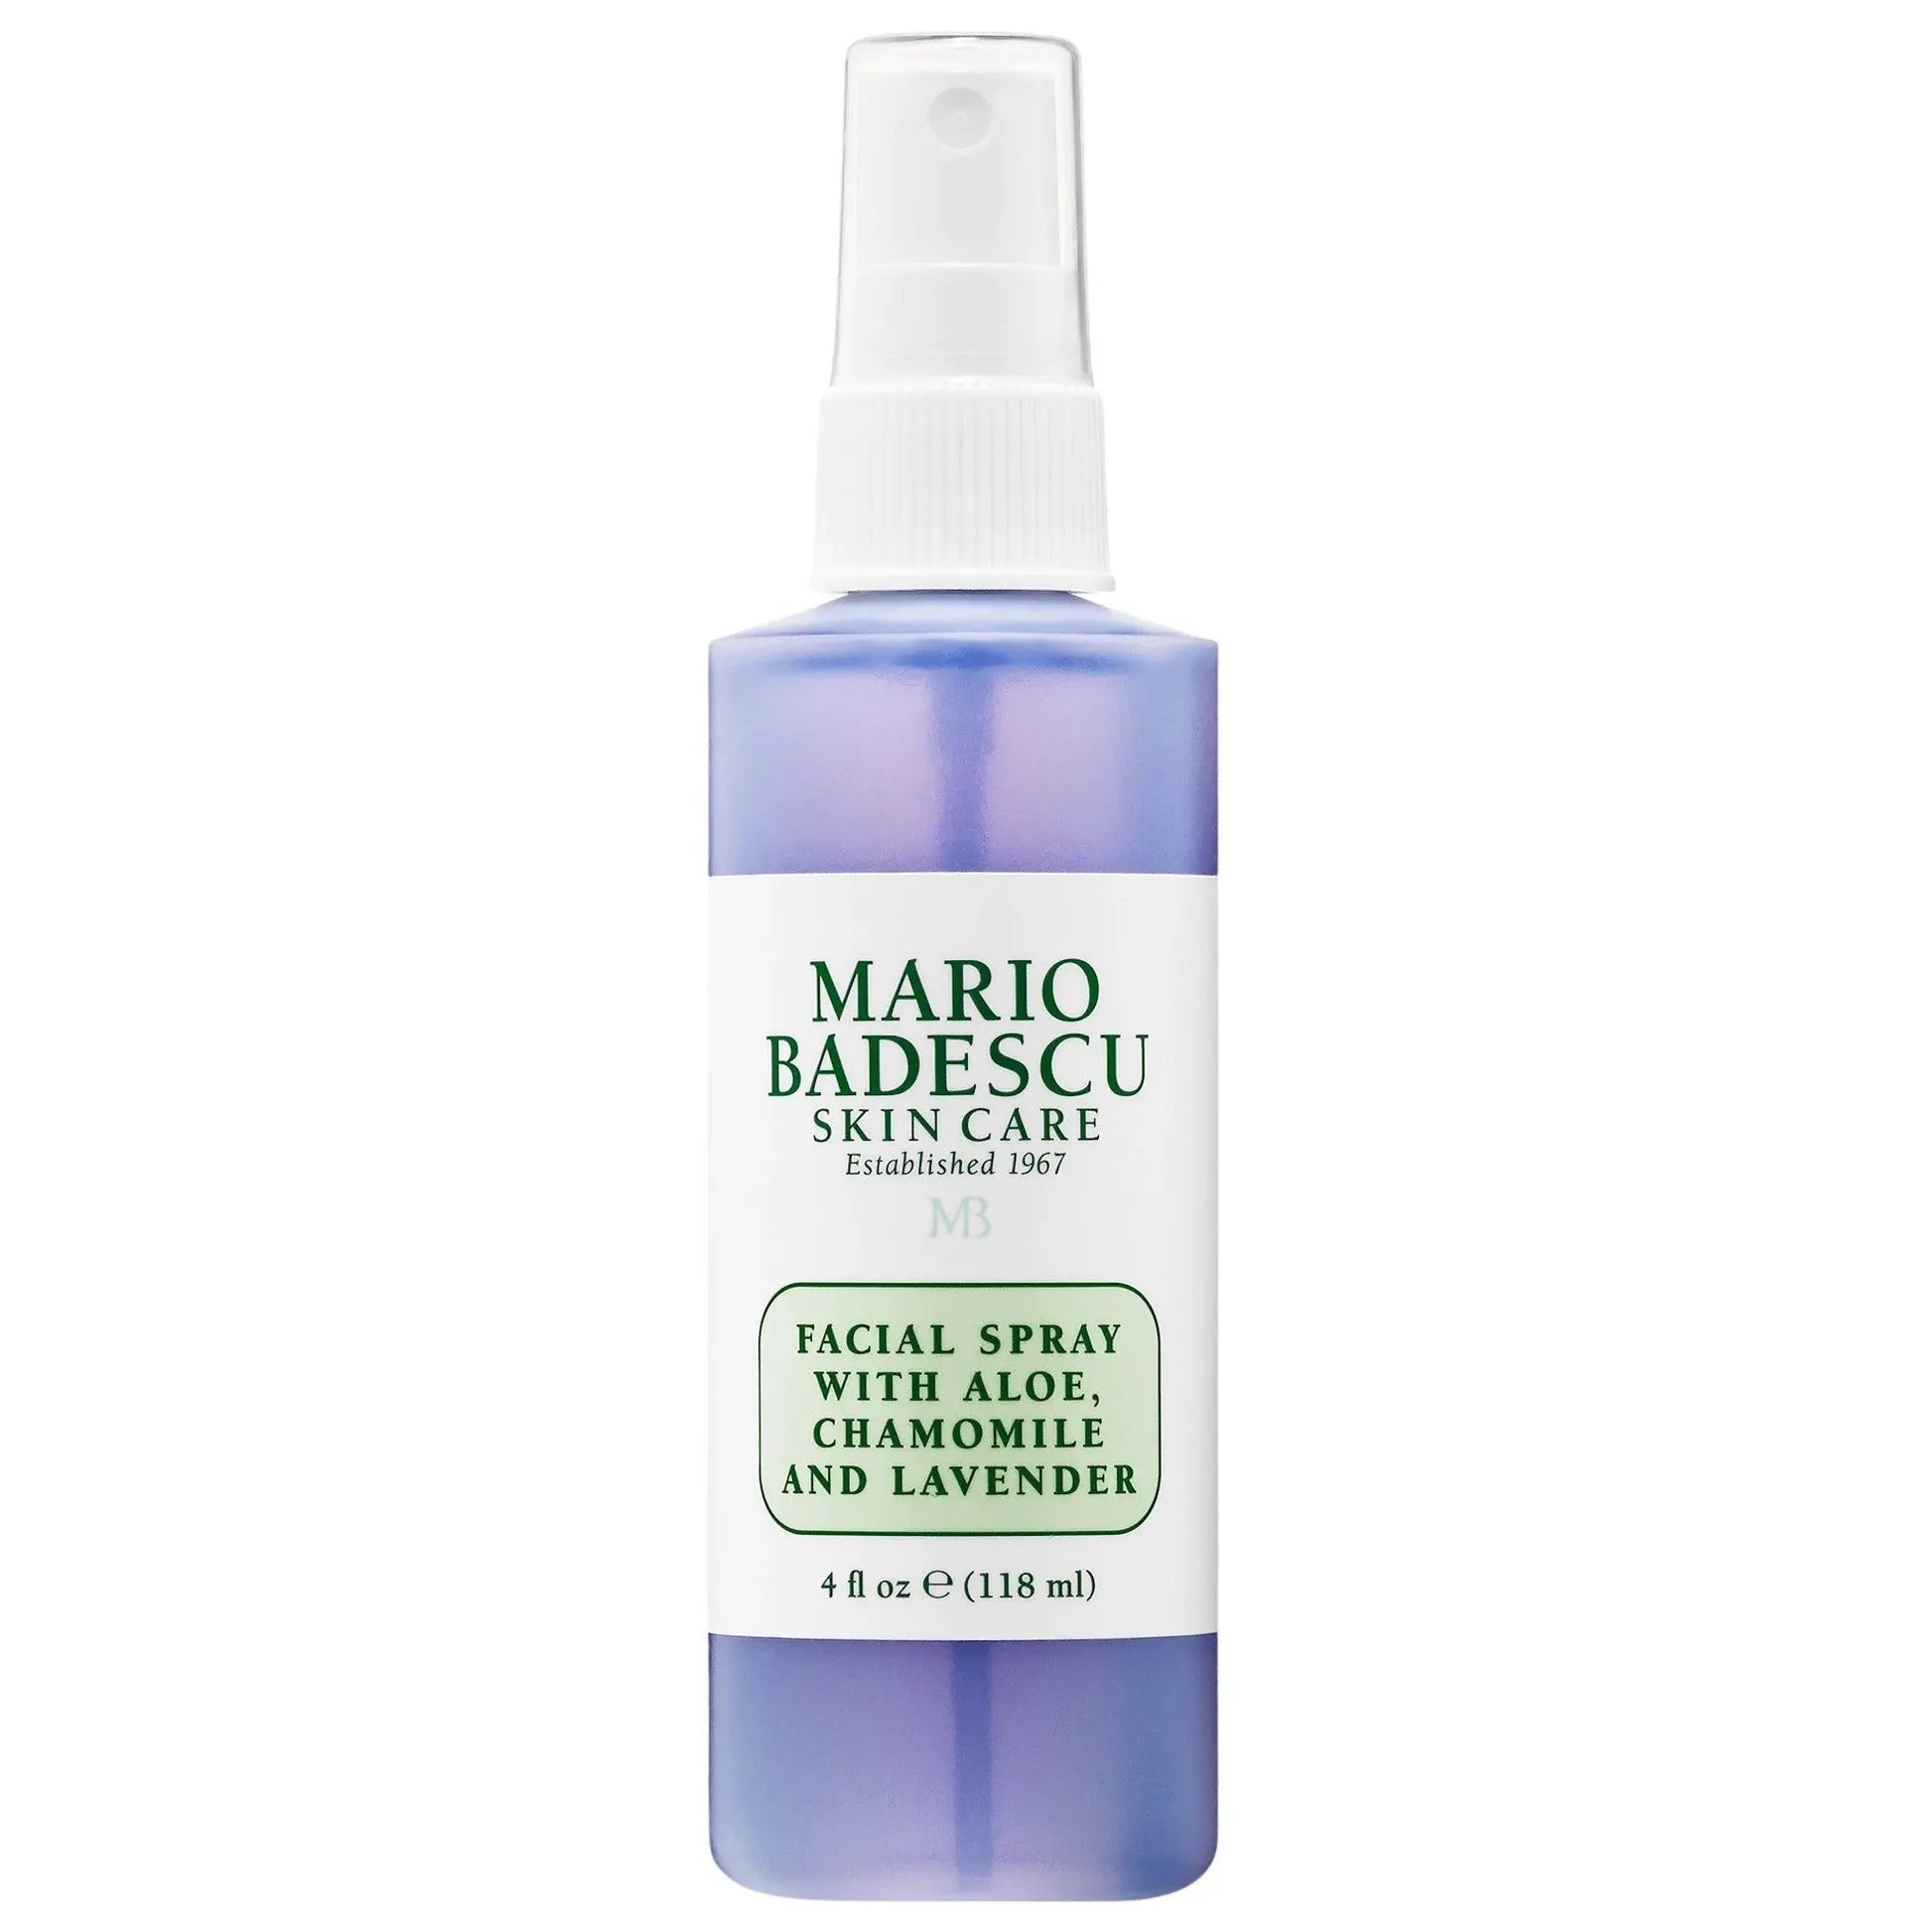 MARIO BADESCU Facial Spray with Aloe, Chamomile and Lavender Mario Badescu